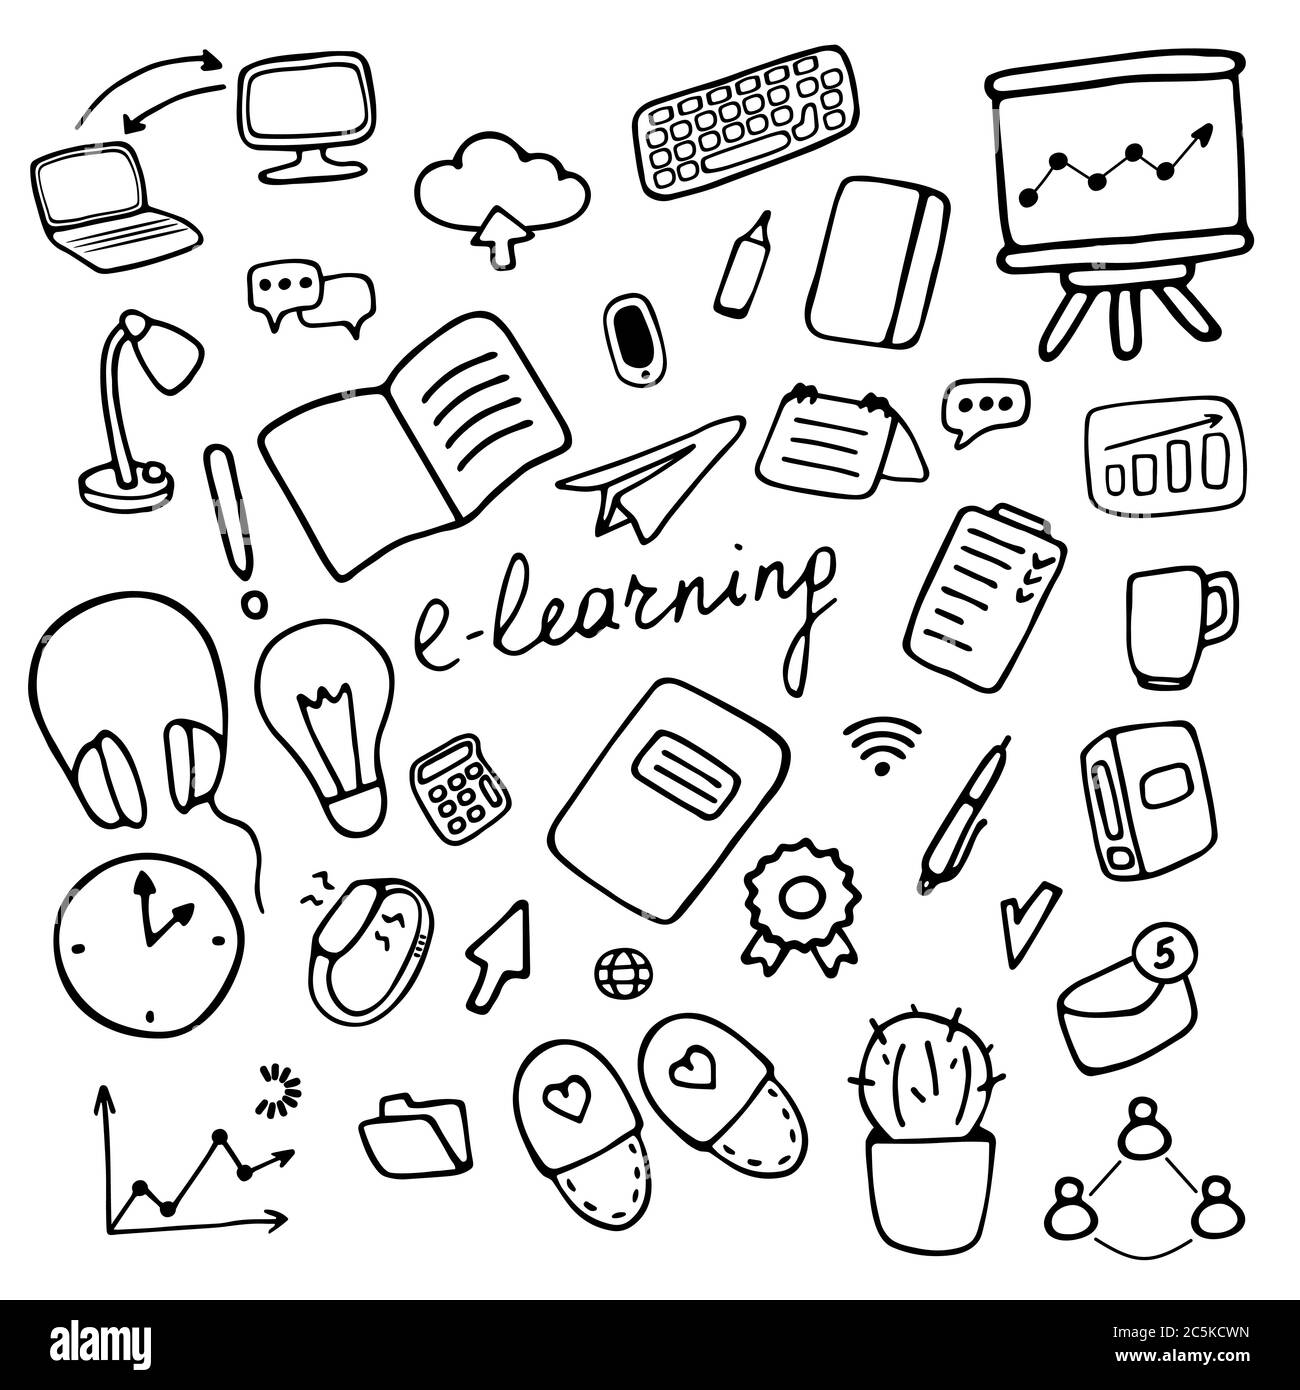 Conjunto de iconos de e-learning. Símbolos de educación en línea. Ilustración vectorial dibujada a mano Ilustración del Vector